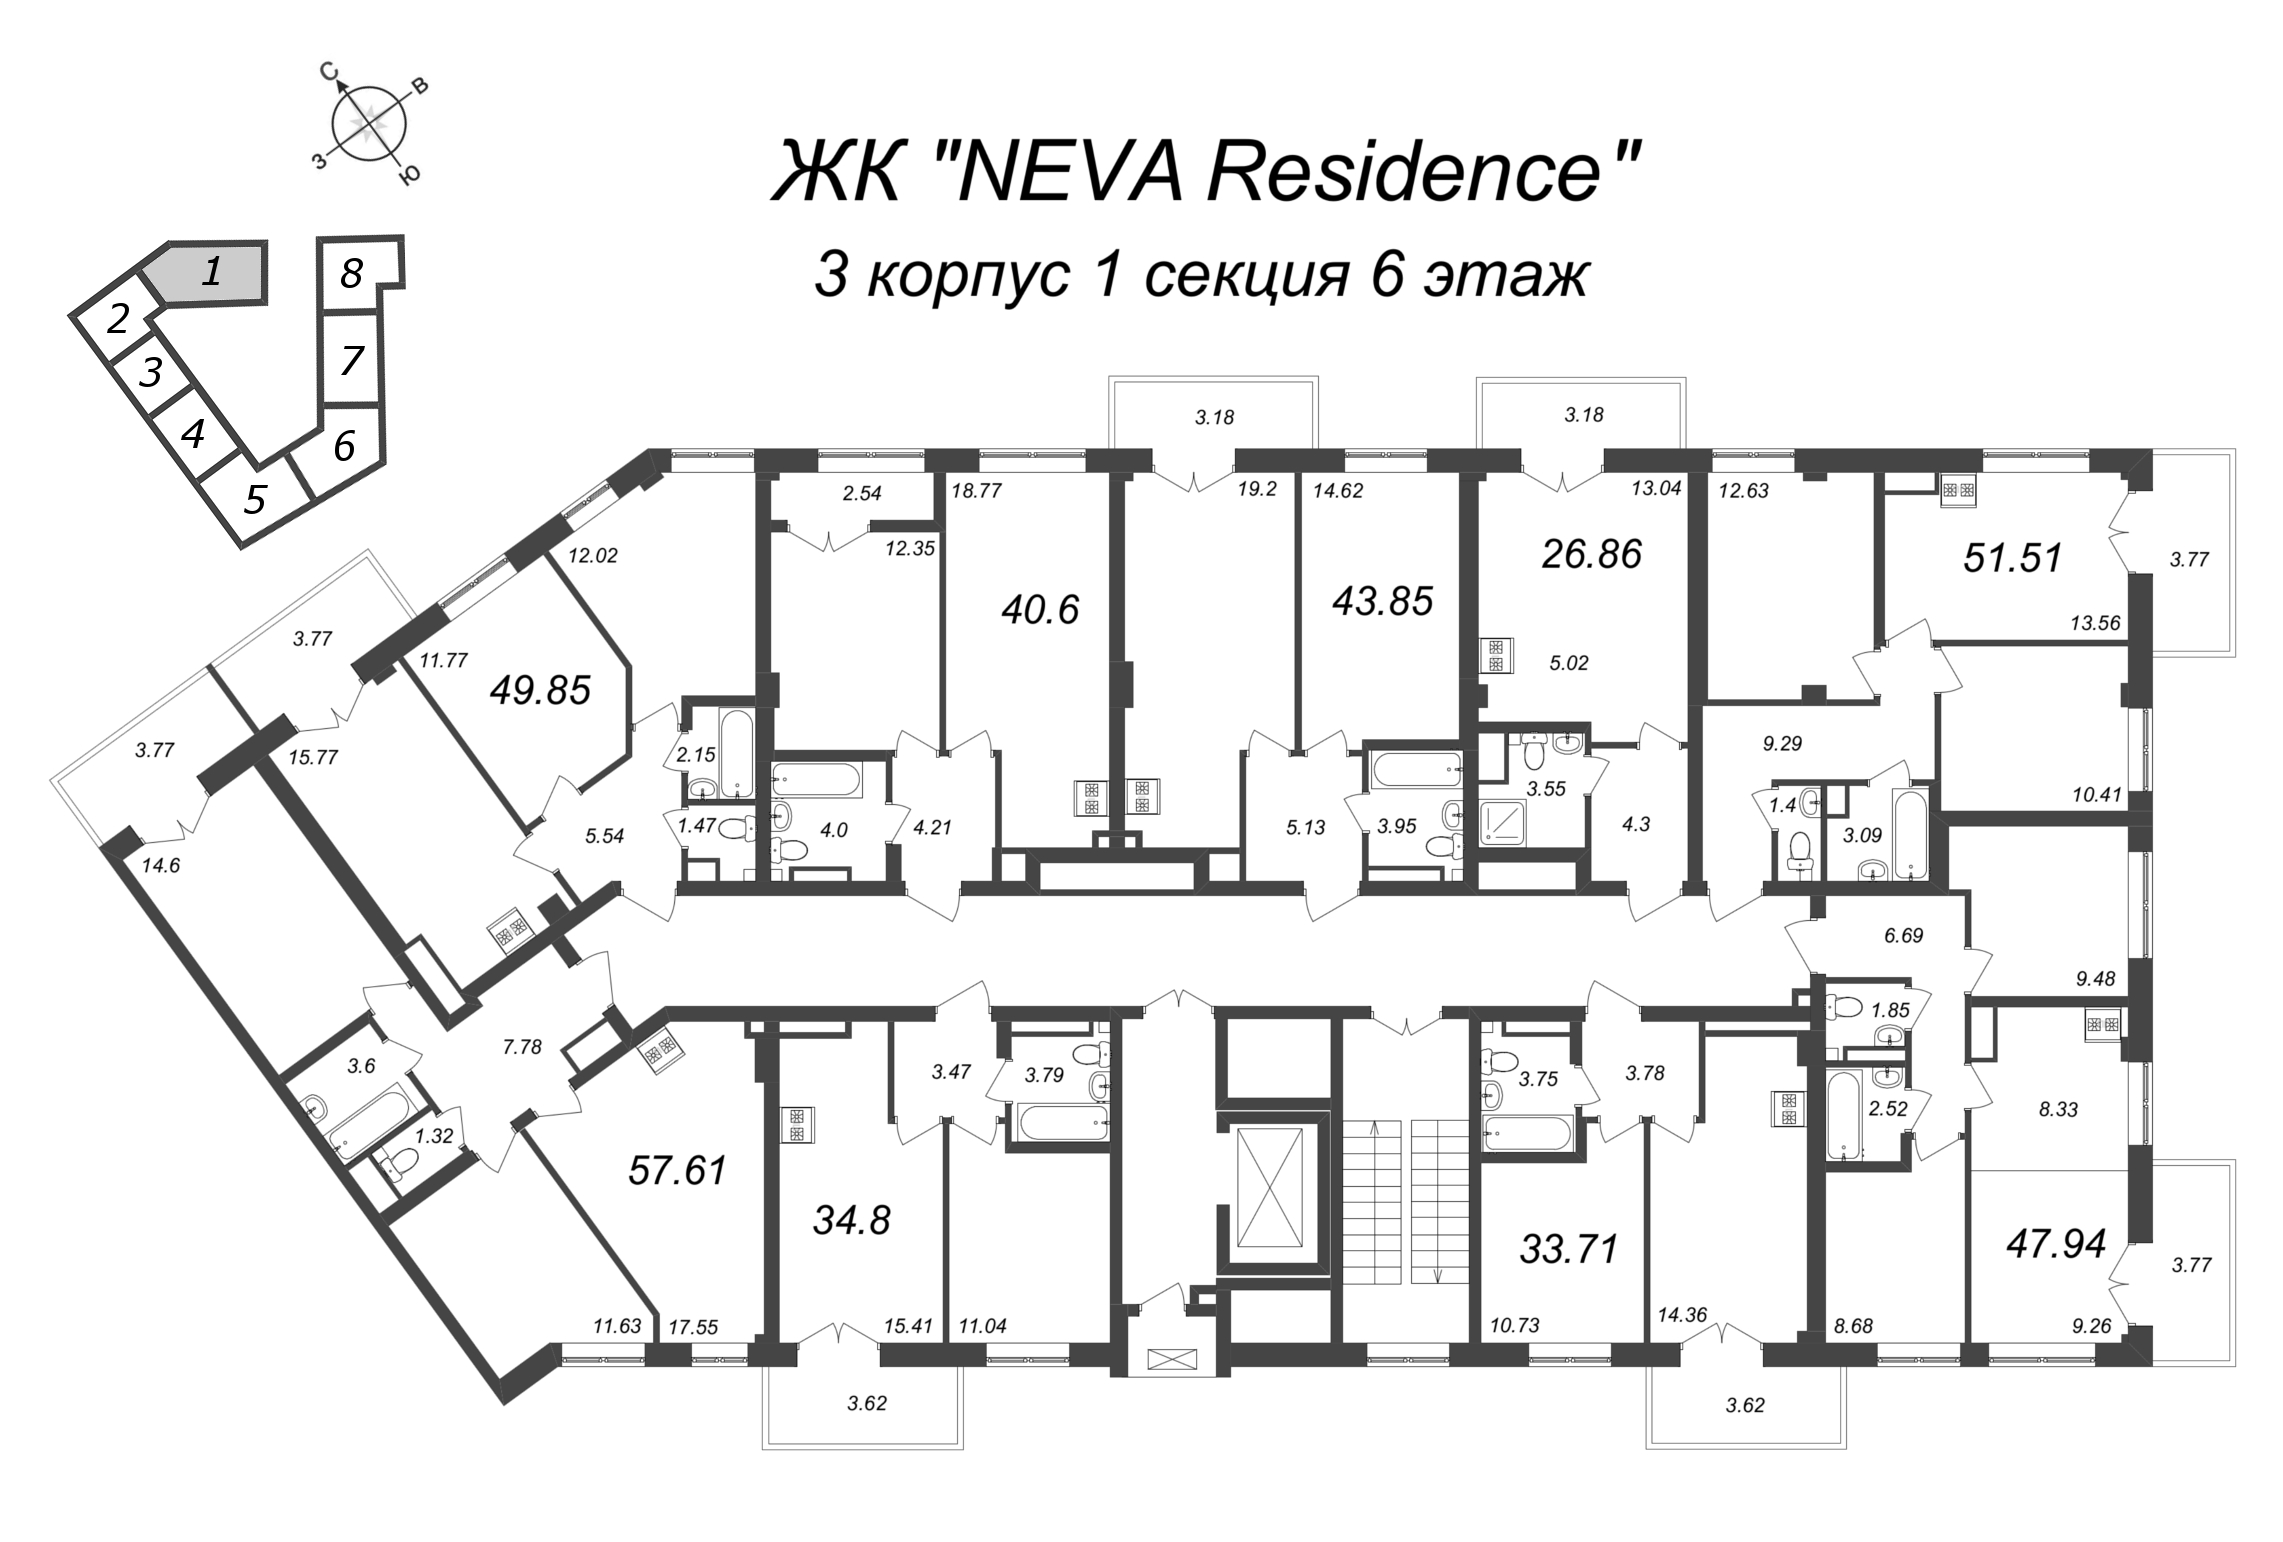 2-комнатная (Евро) квартира, 43.85 м² в ЖК "Neva Residence" - планировка этажа